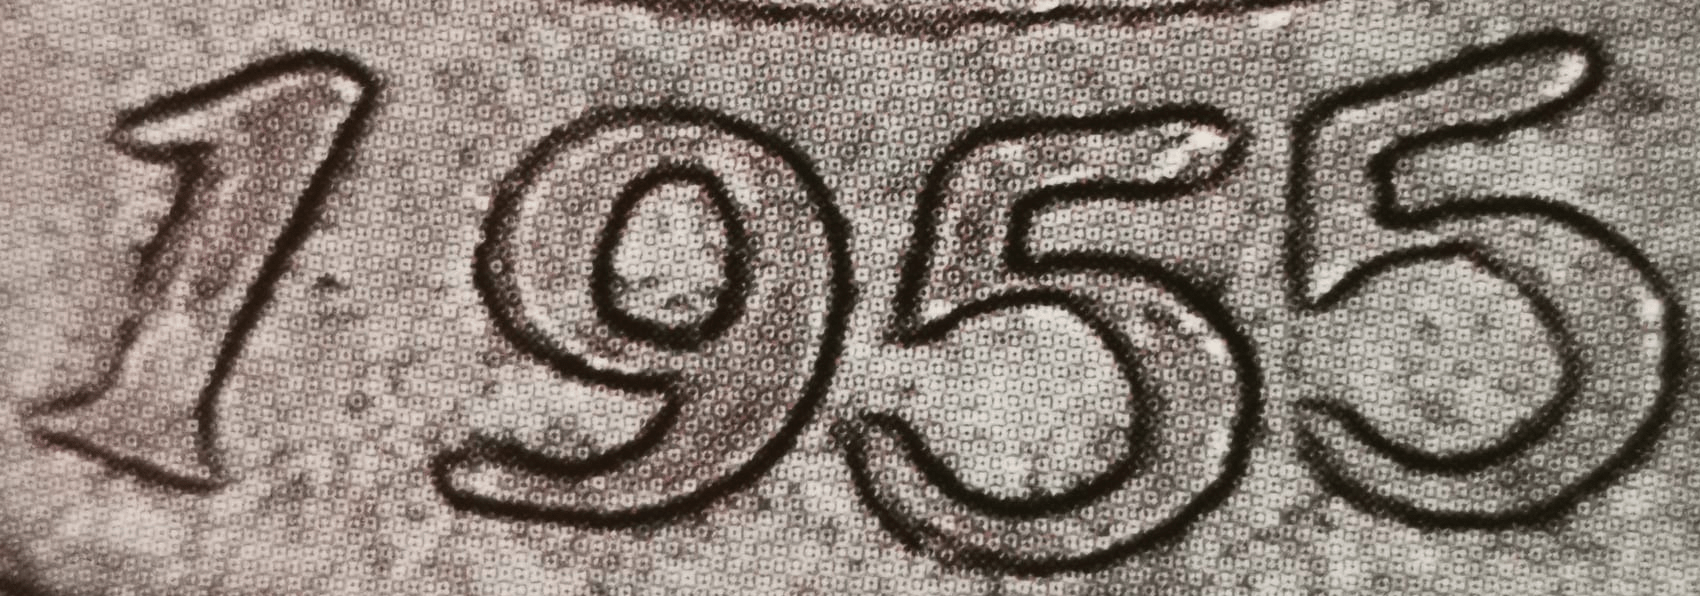 10 markkaa 1955 variantti 1.2 tunnuspuoli